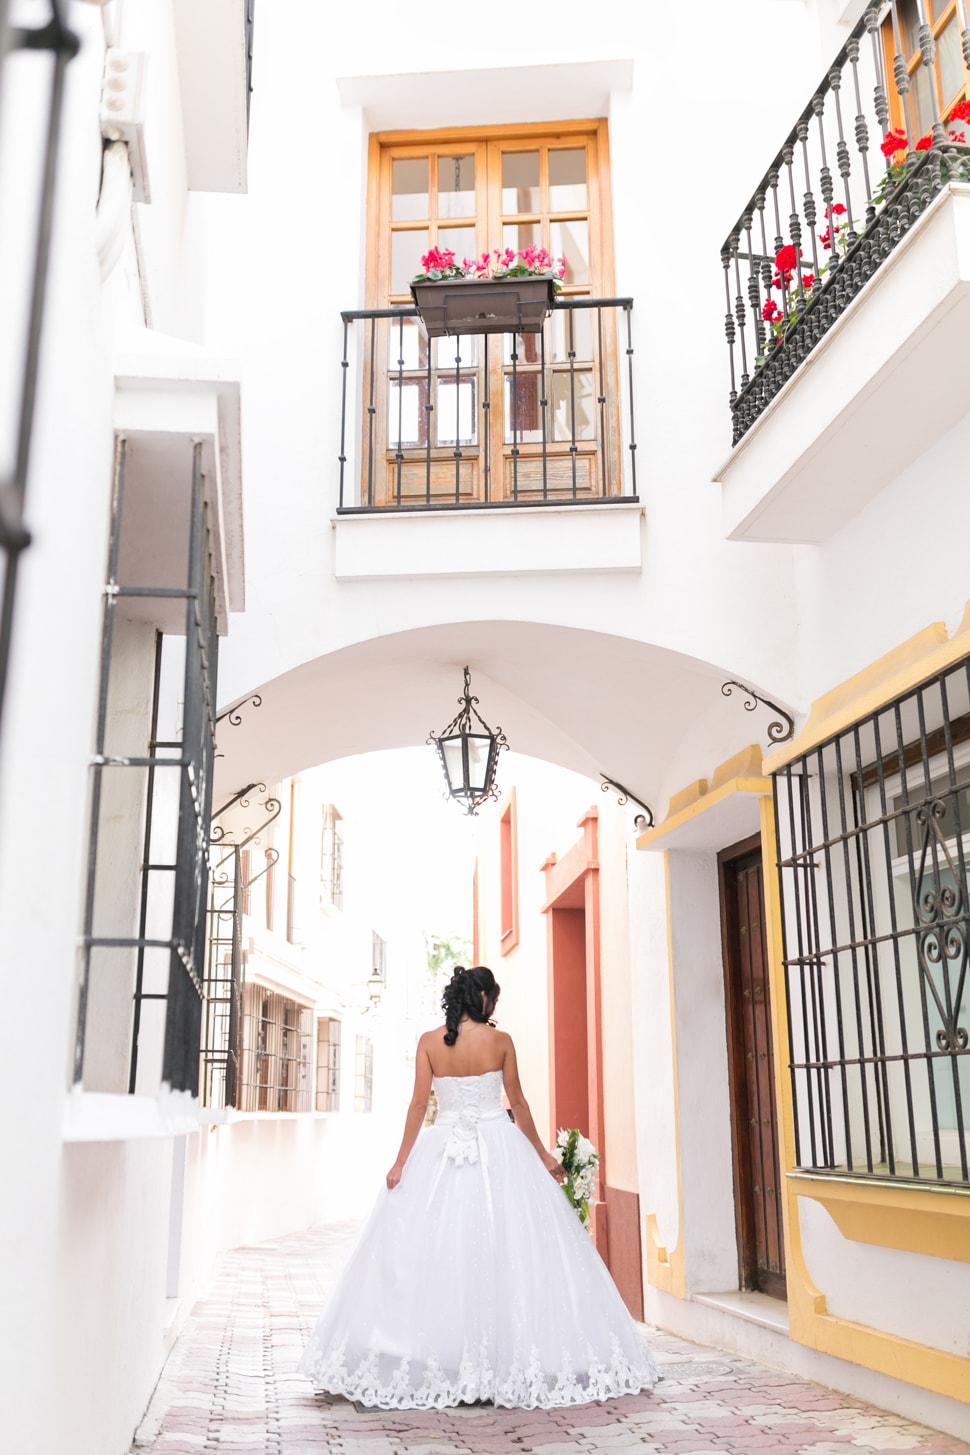 Hochzeitsfotos von Grace in Marbella